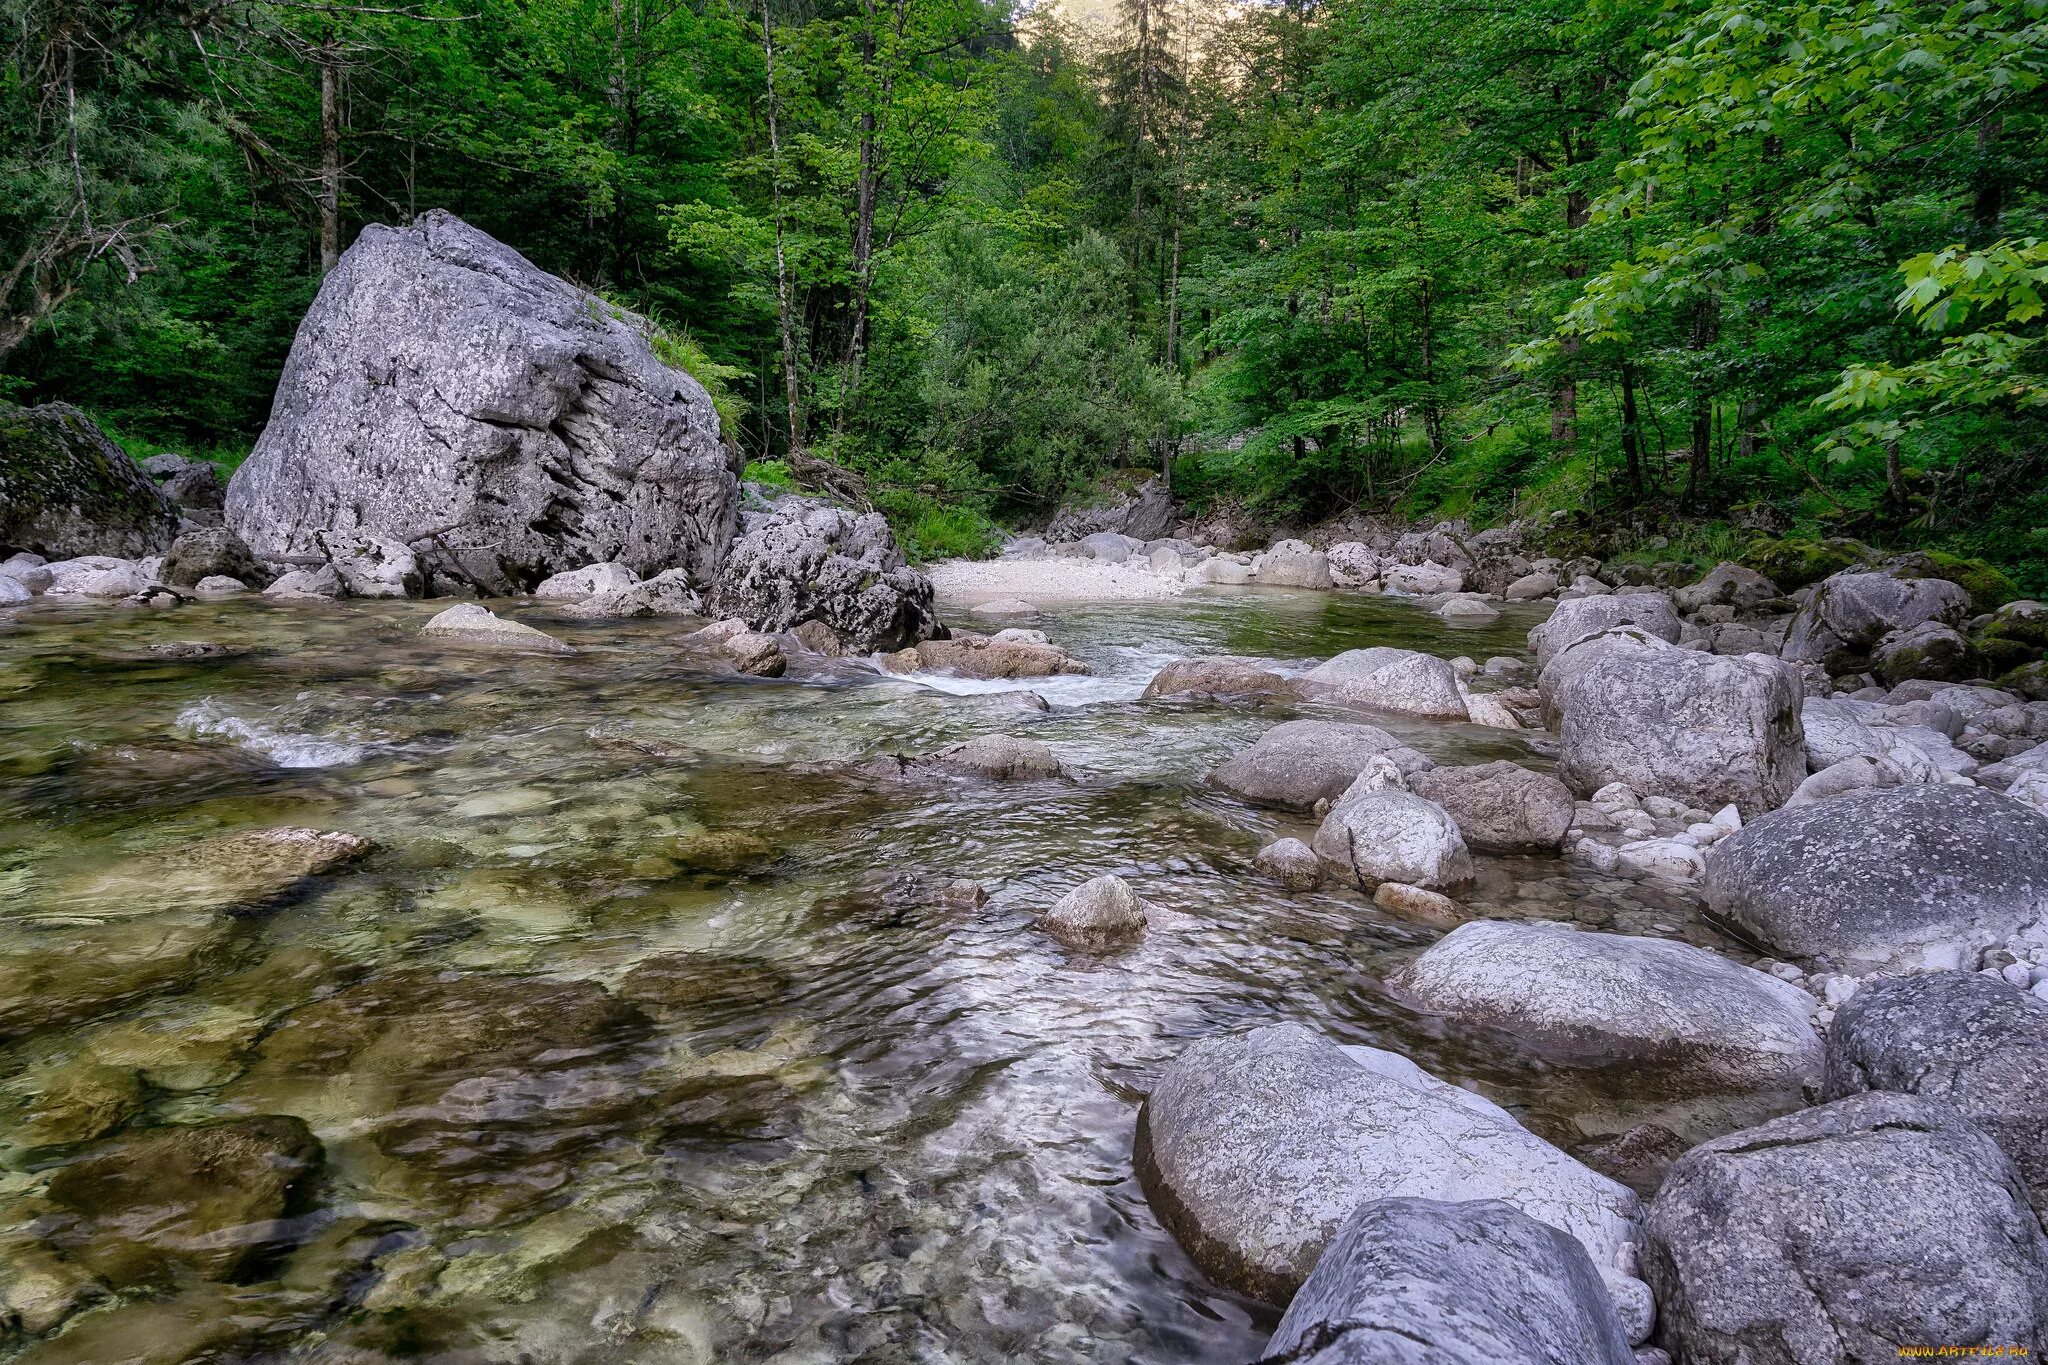 Stone river. Речка Каширка камни. Речные валуны. Горная речка с камнями. Большие камни у реки.